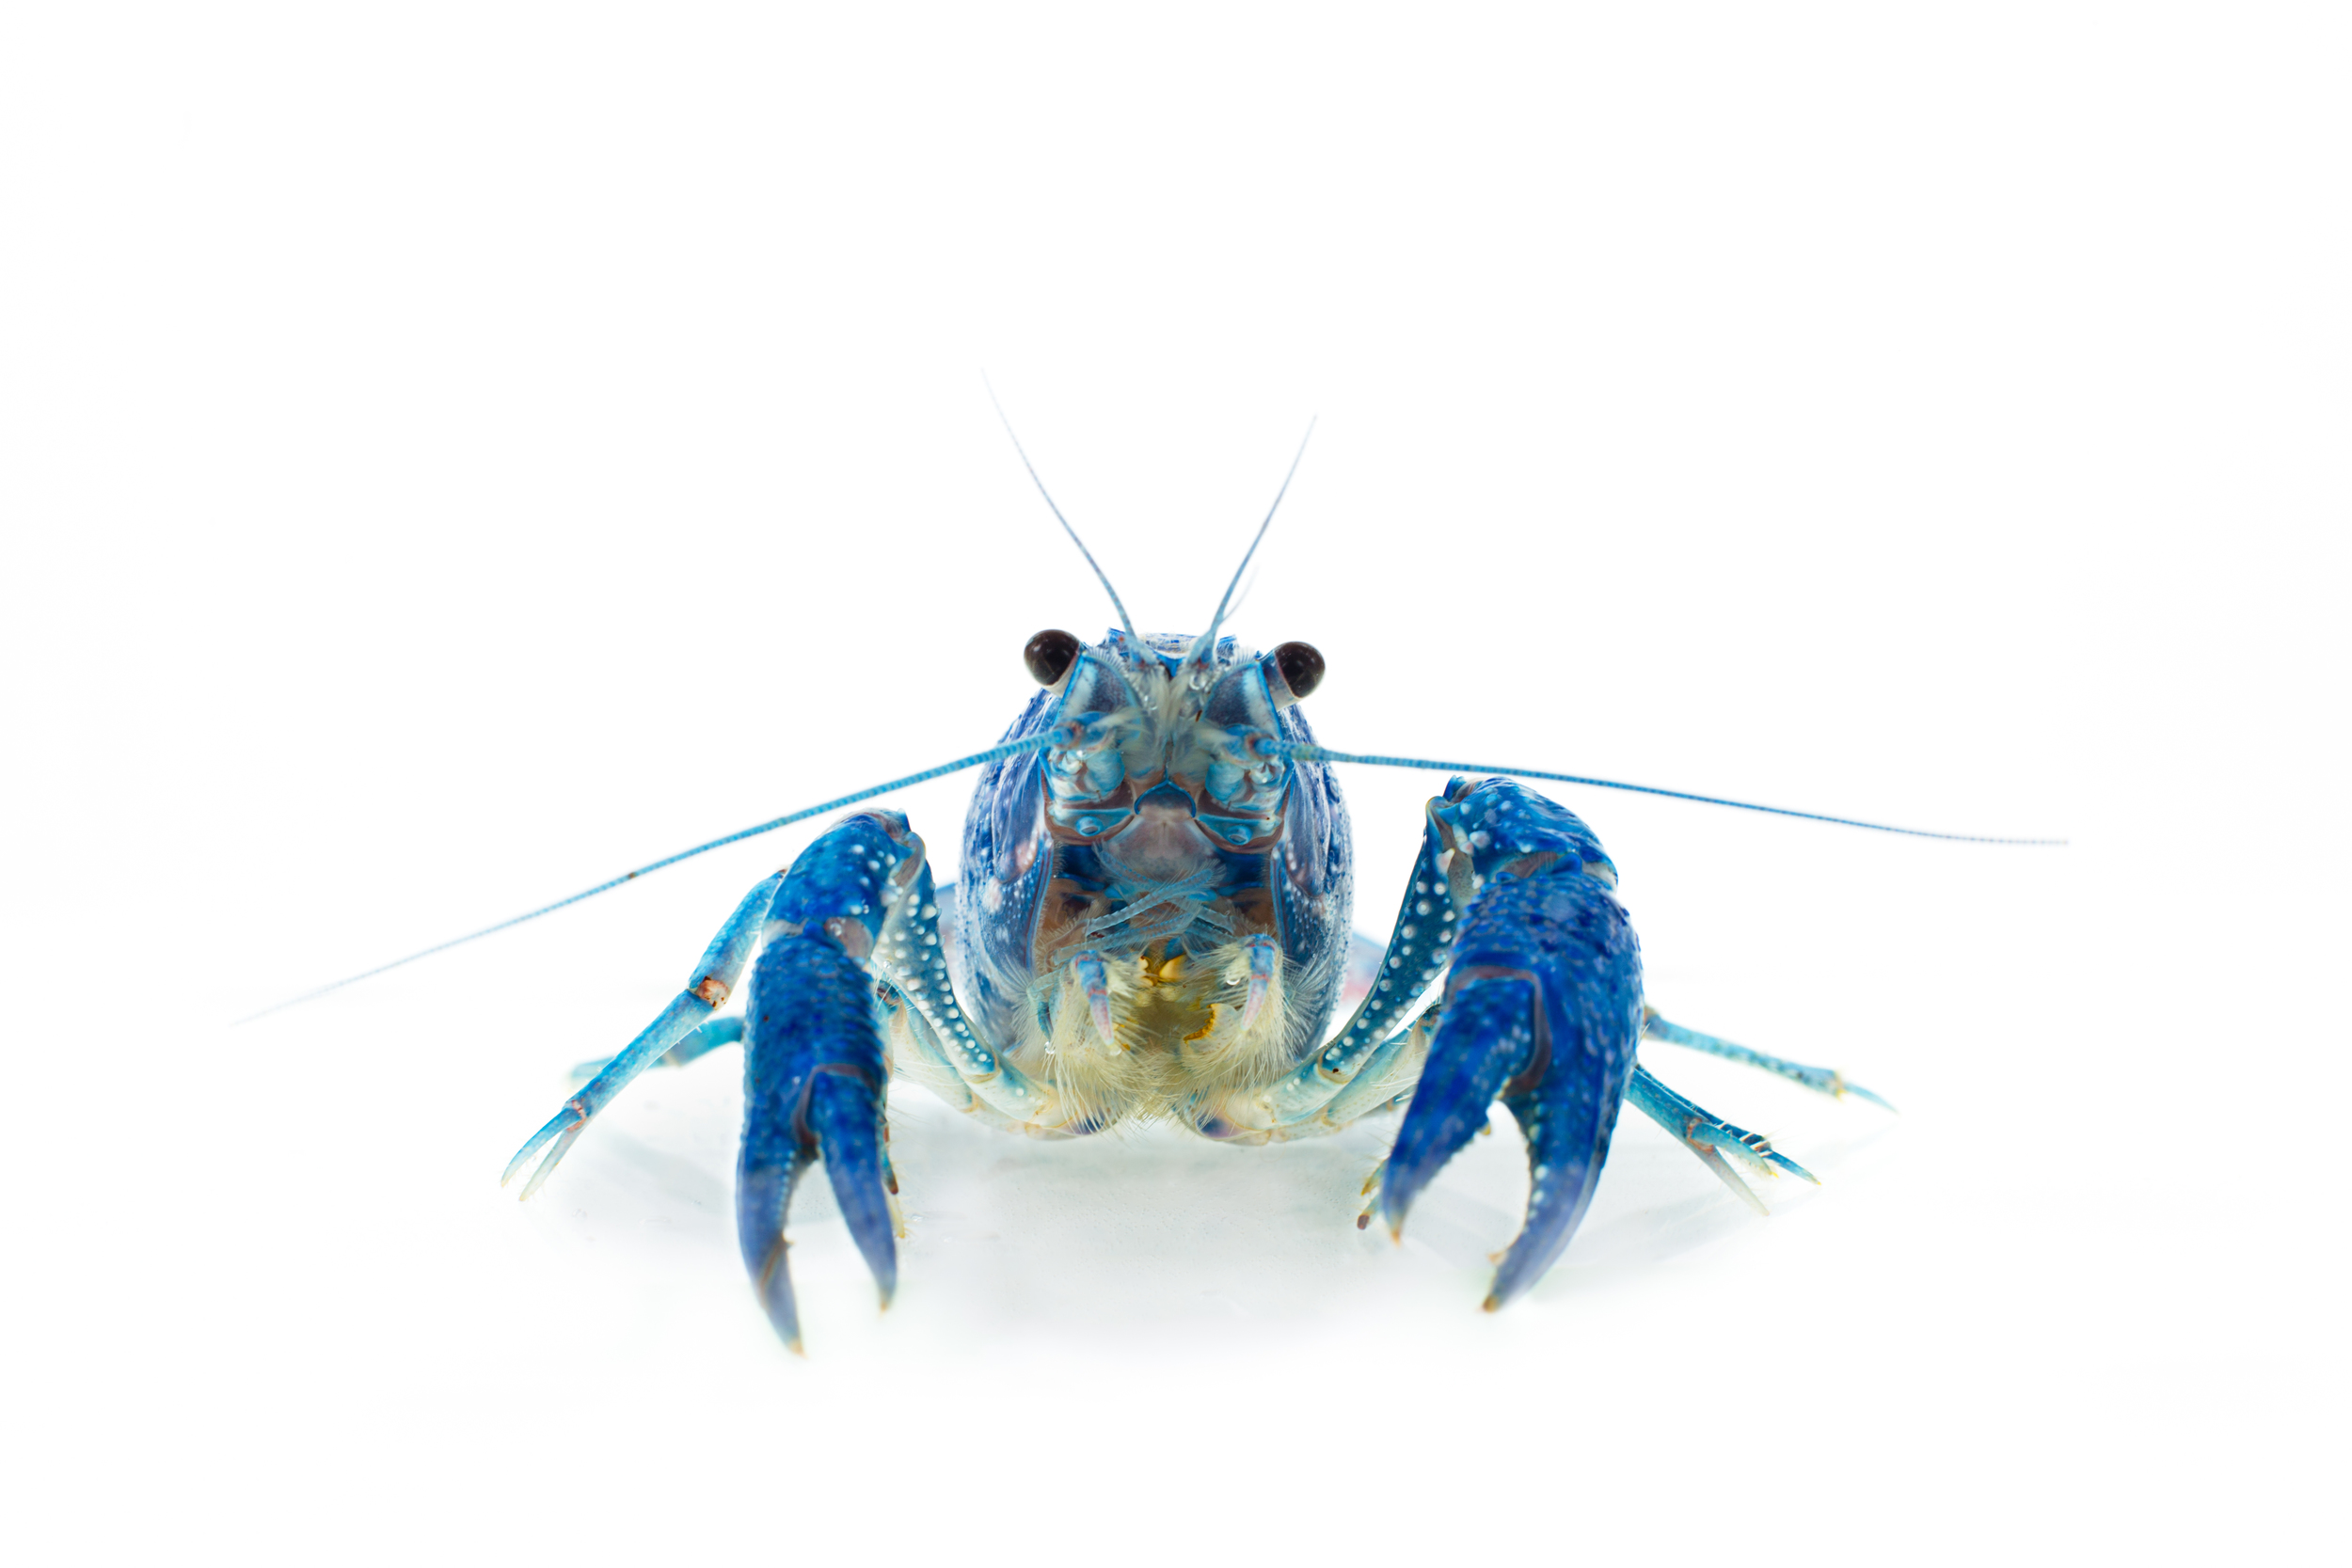 Procambarus alleni "Blue Crayfish"